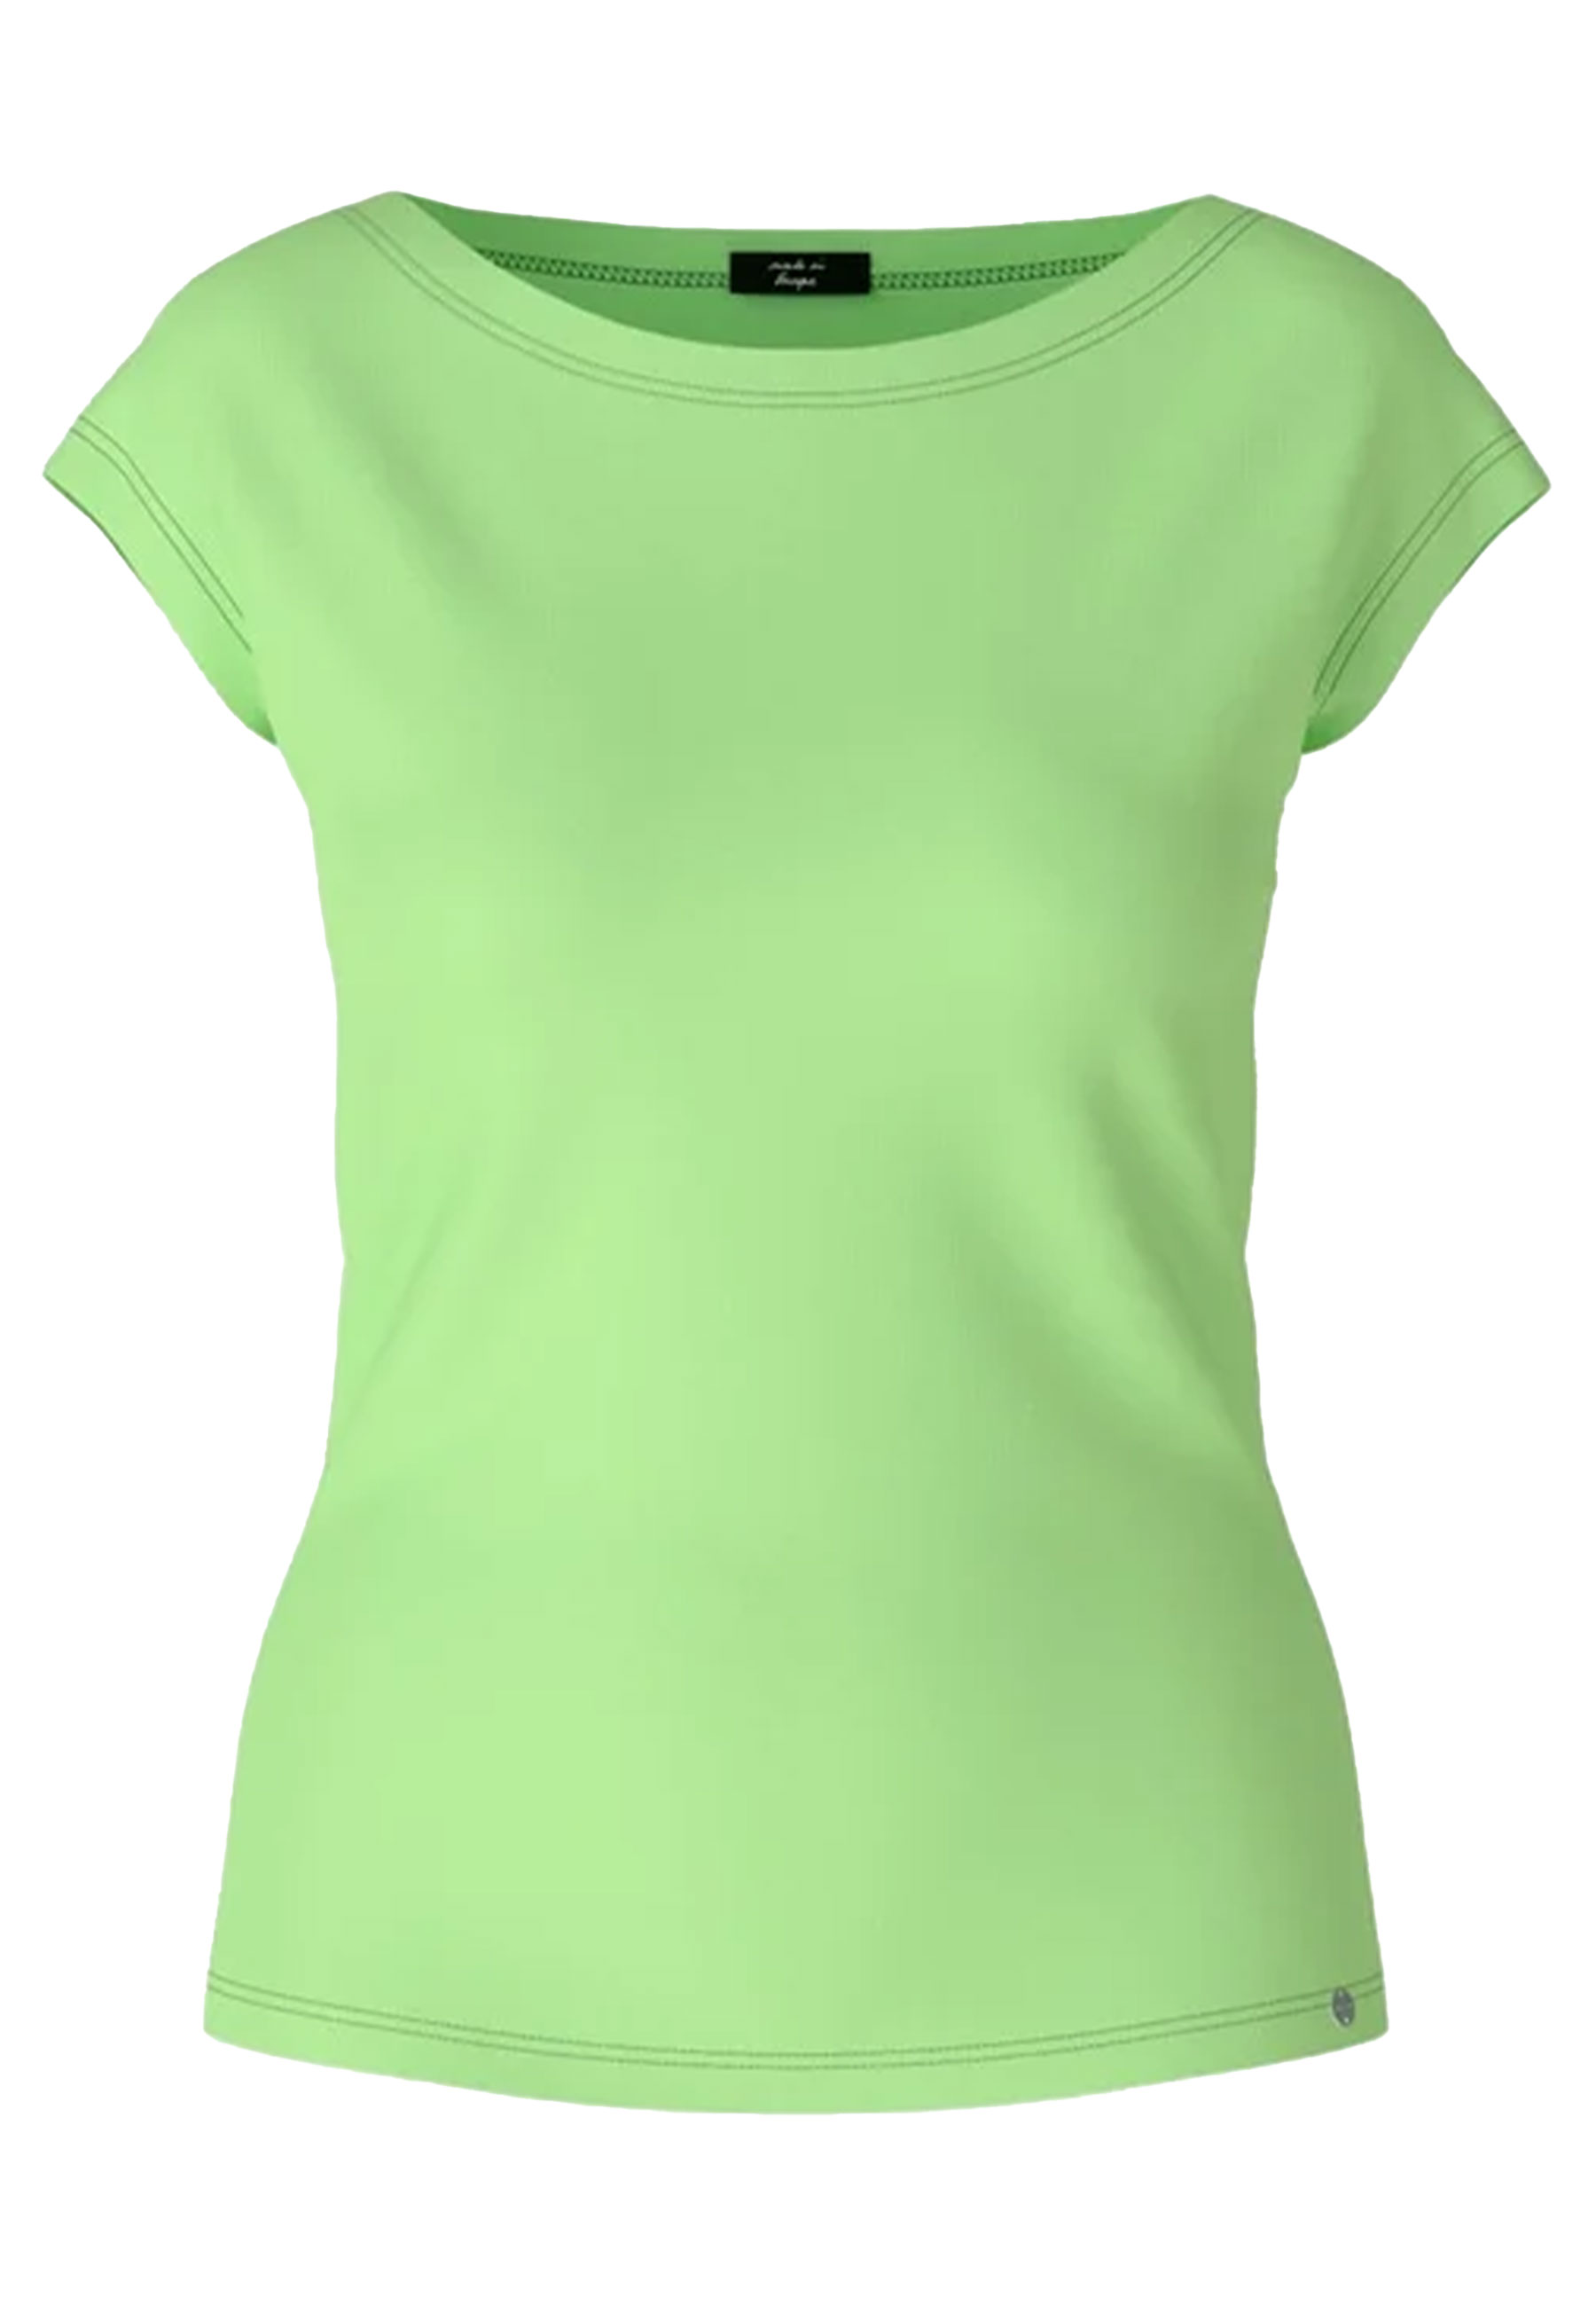 Shirt Groen t-shirts groen